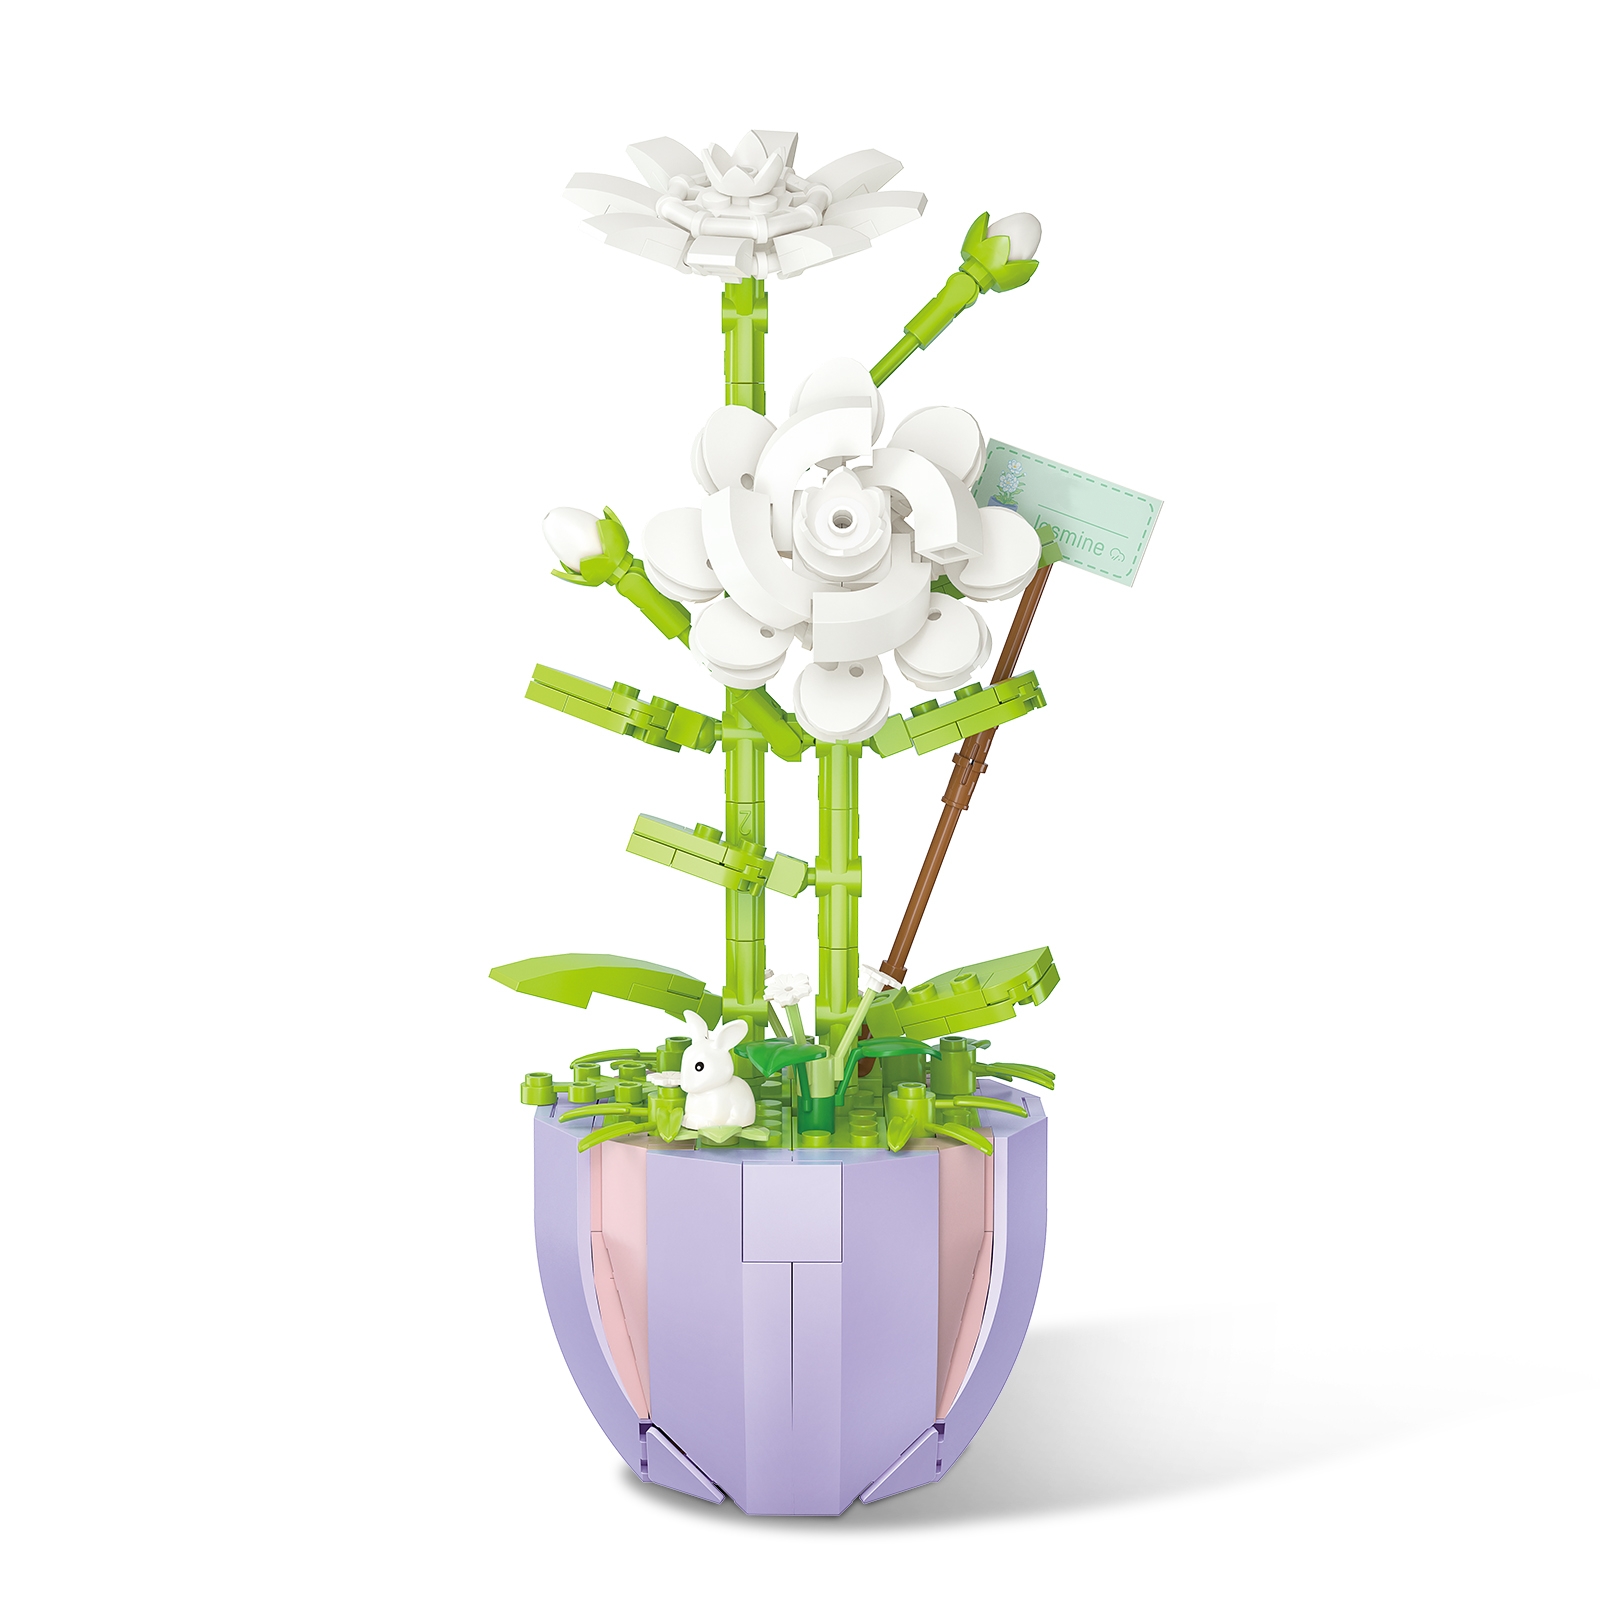 Challenge: custom flower blocks, Flower generator